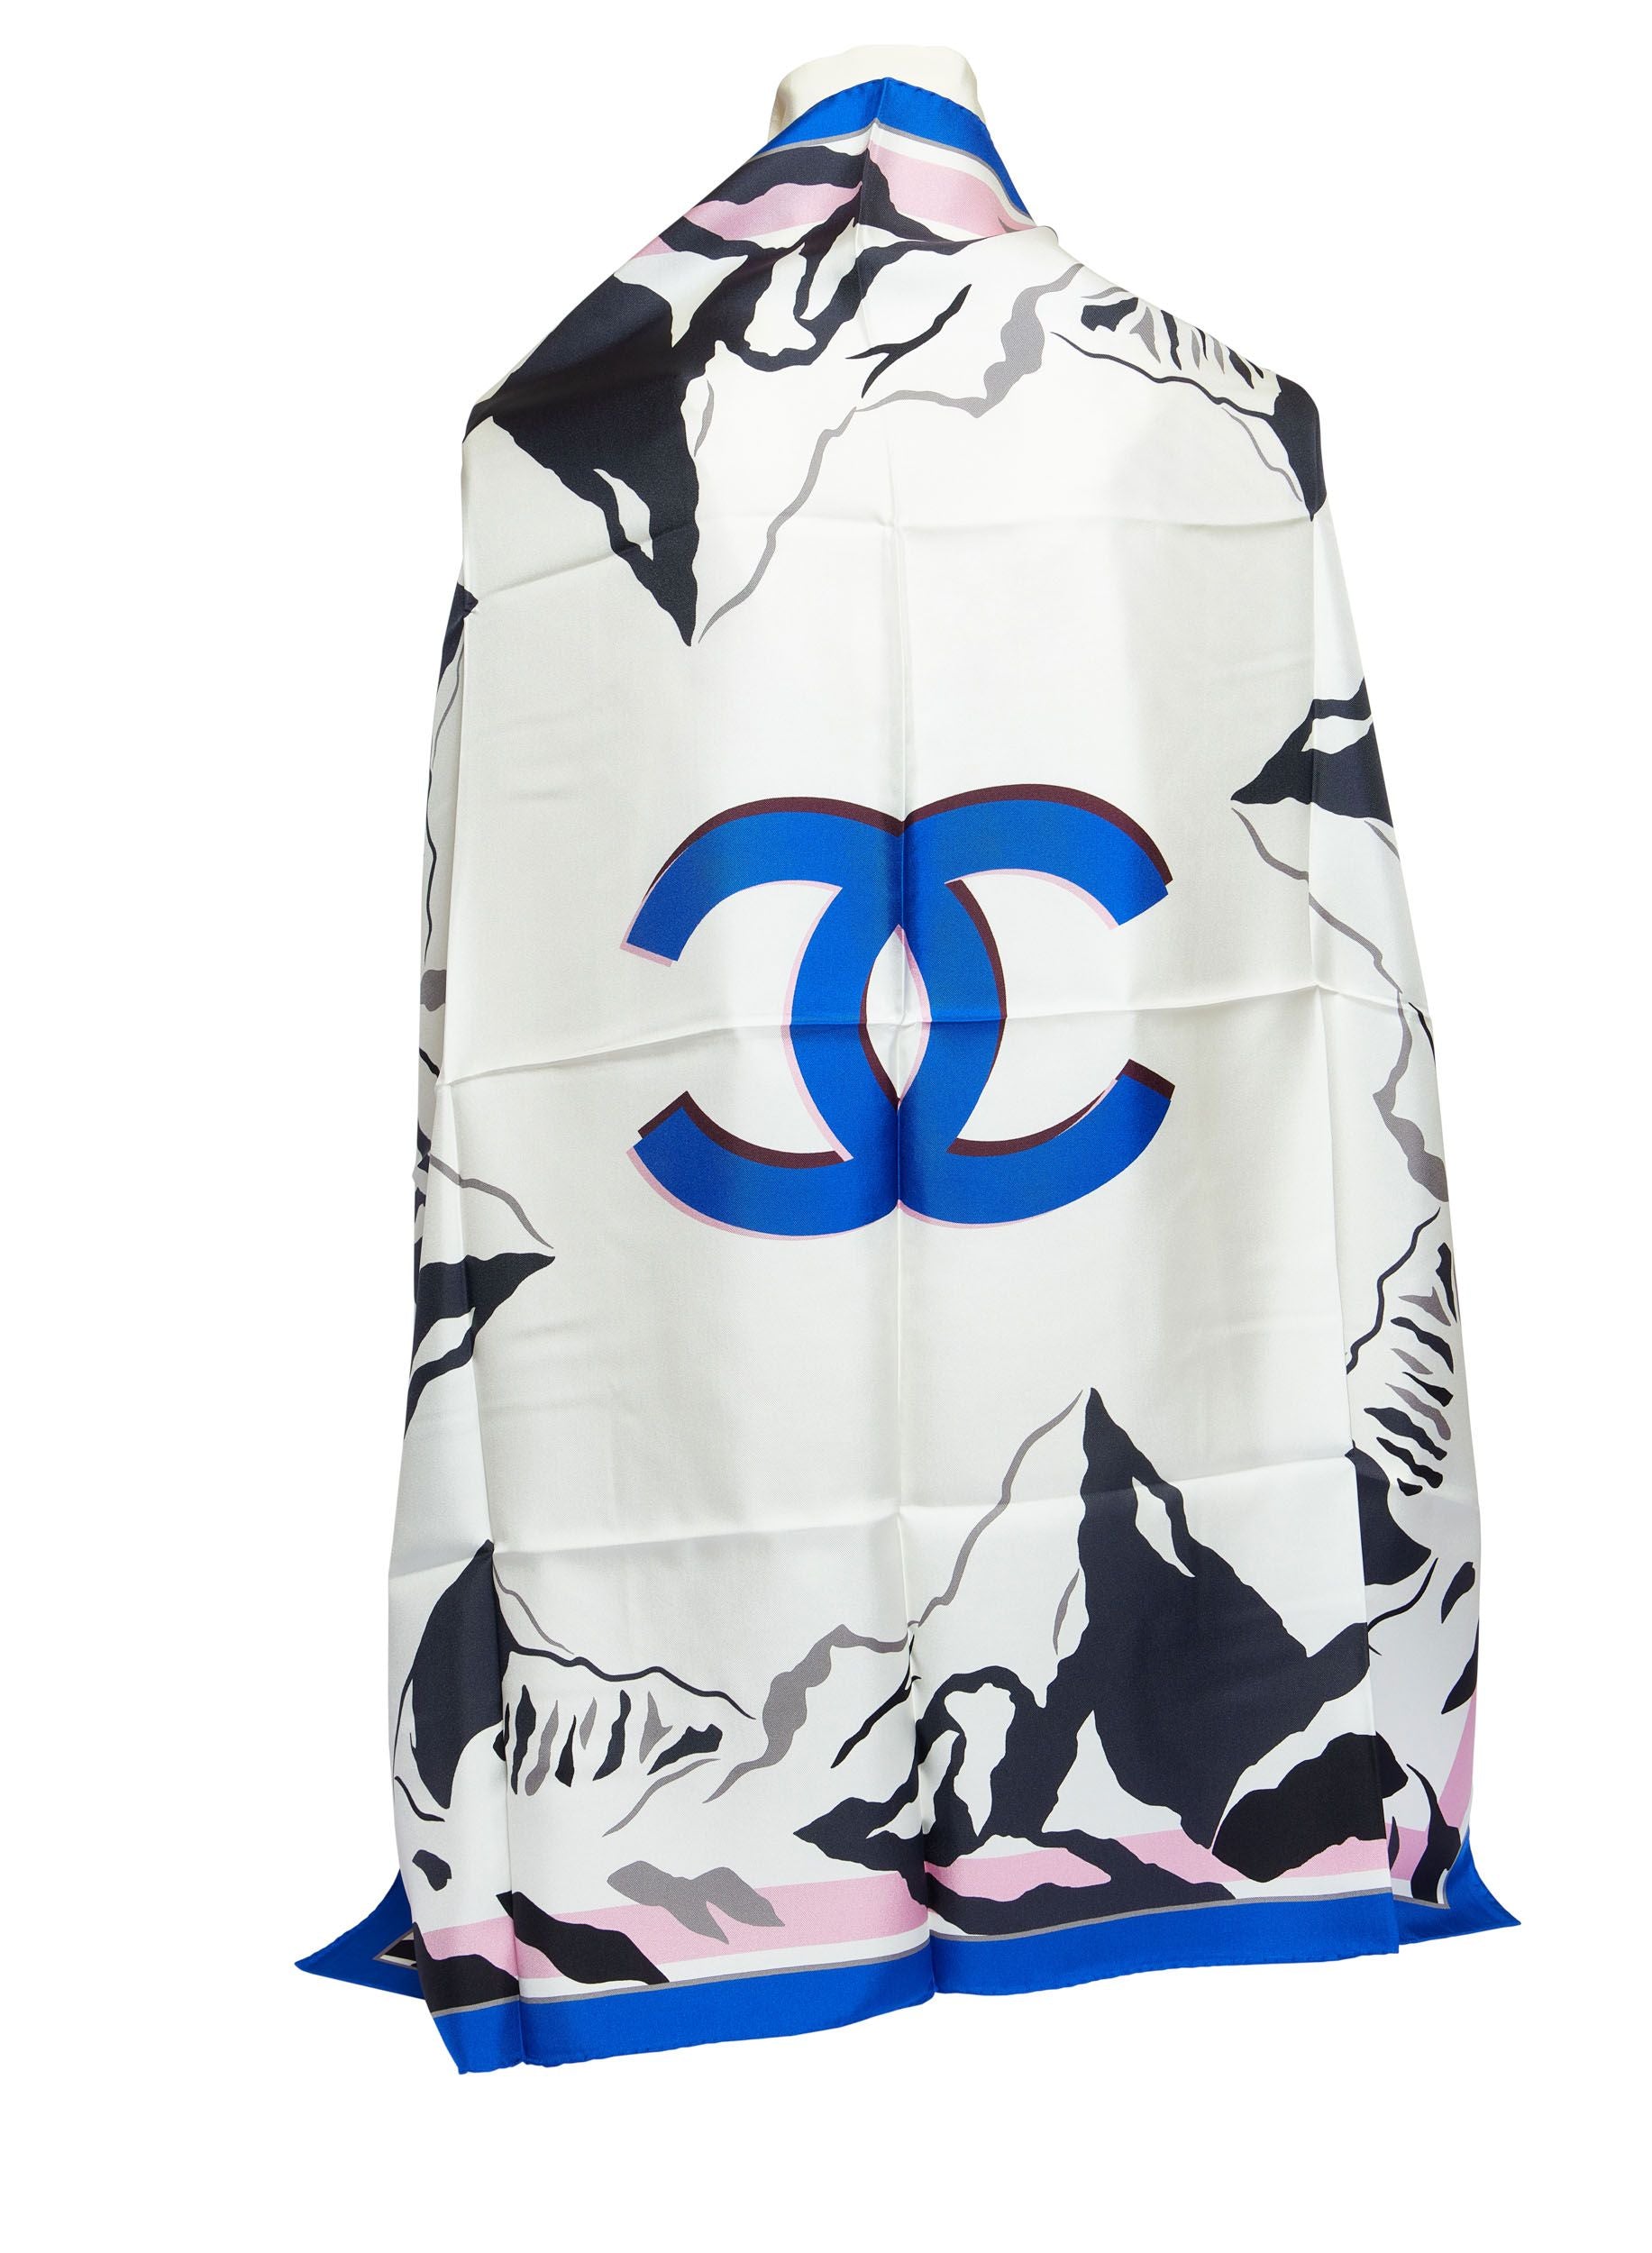 CHANEL, Accessories, Chanel Silk Scarf Iconic Chanel Ladiesblack And White  Rare Euc